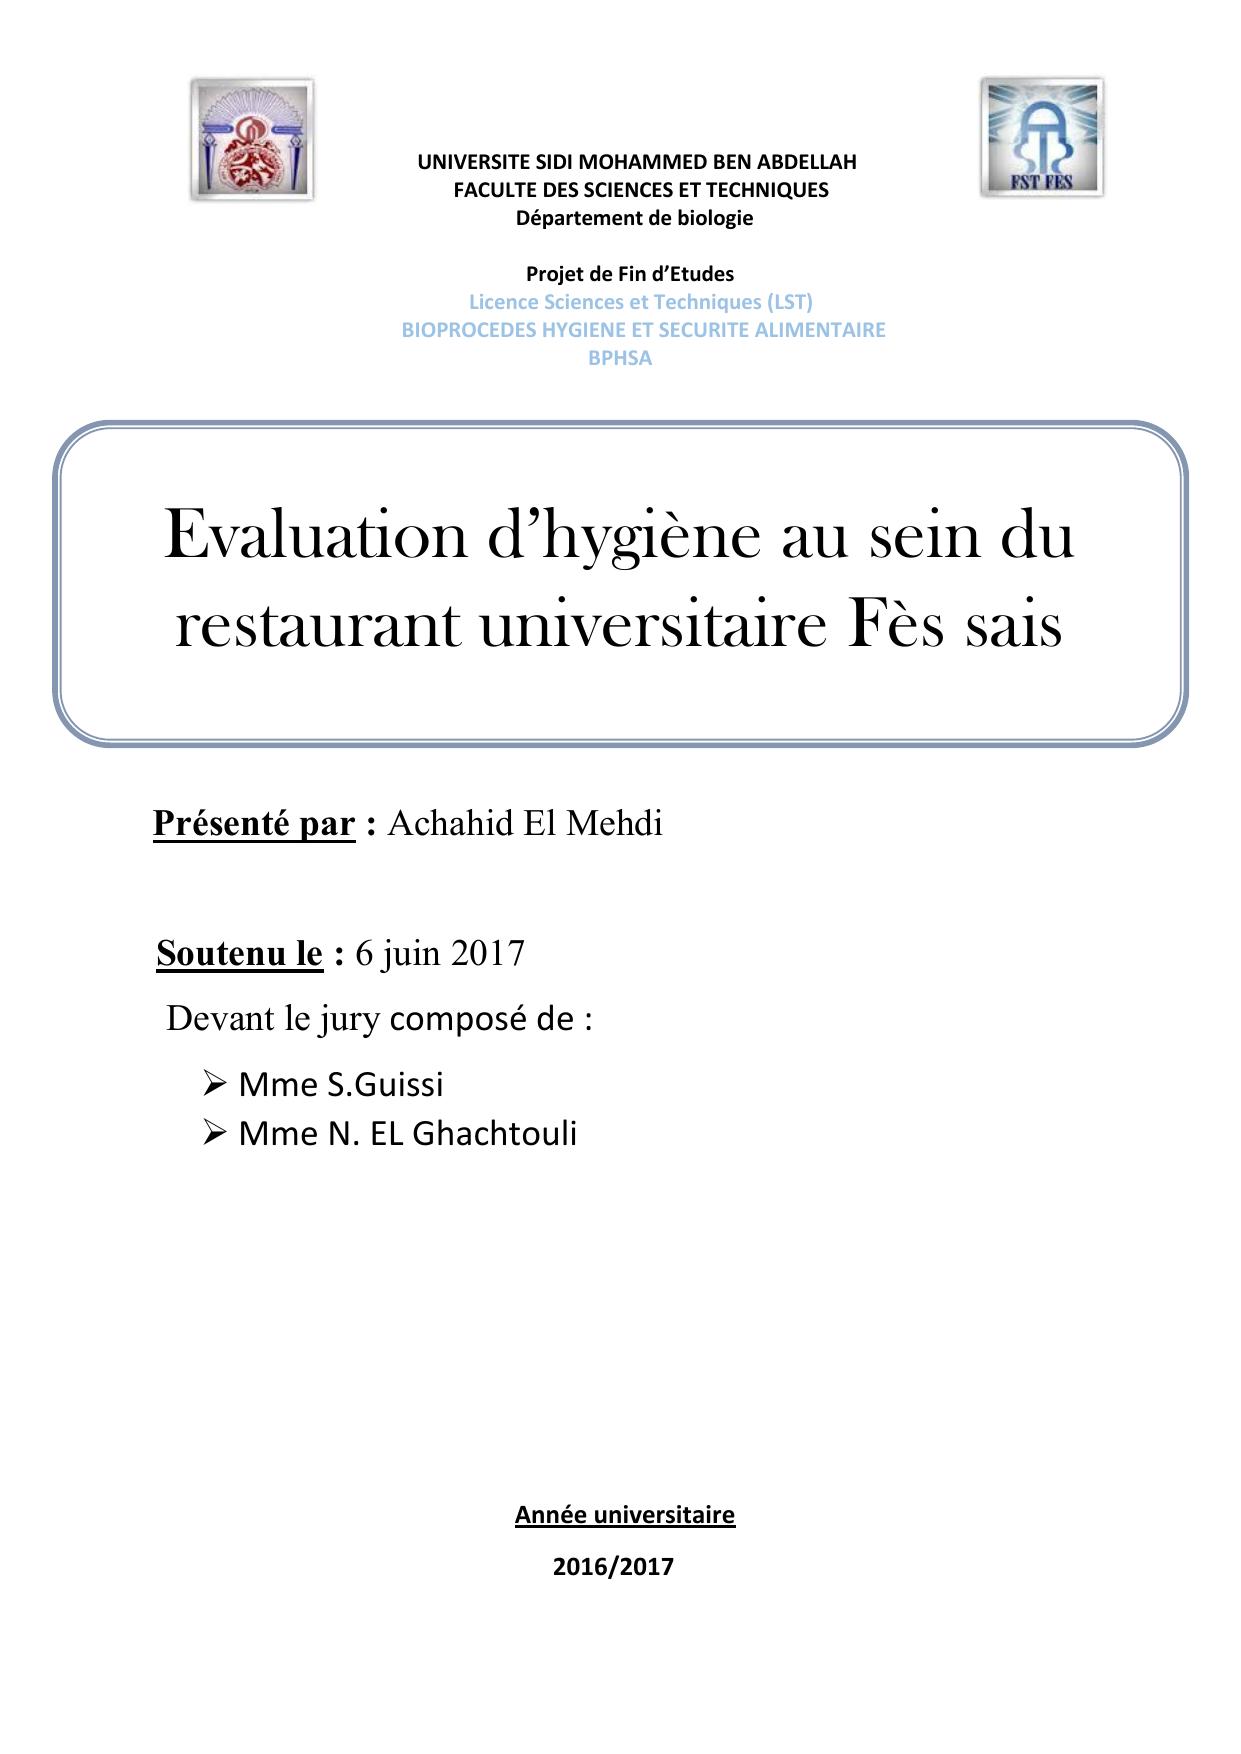 Evaluation d’hygiène au sein du restaurant universitaire Fès sais